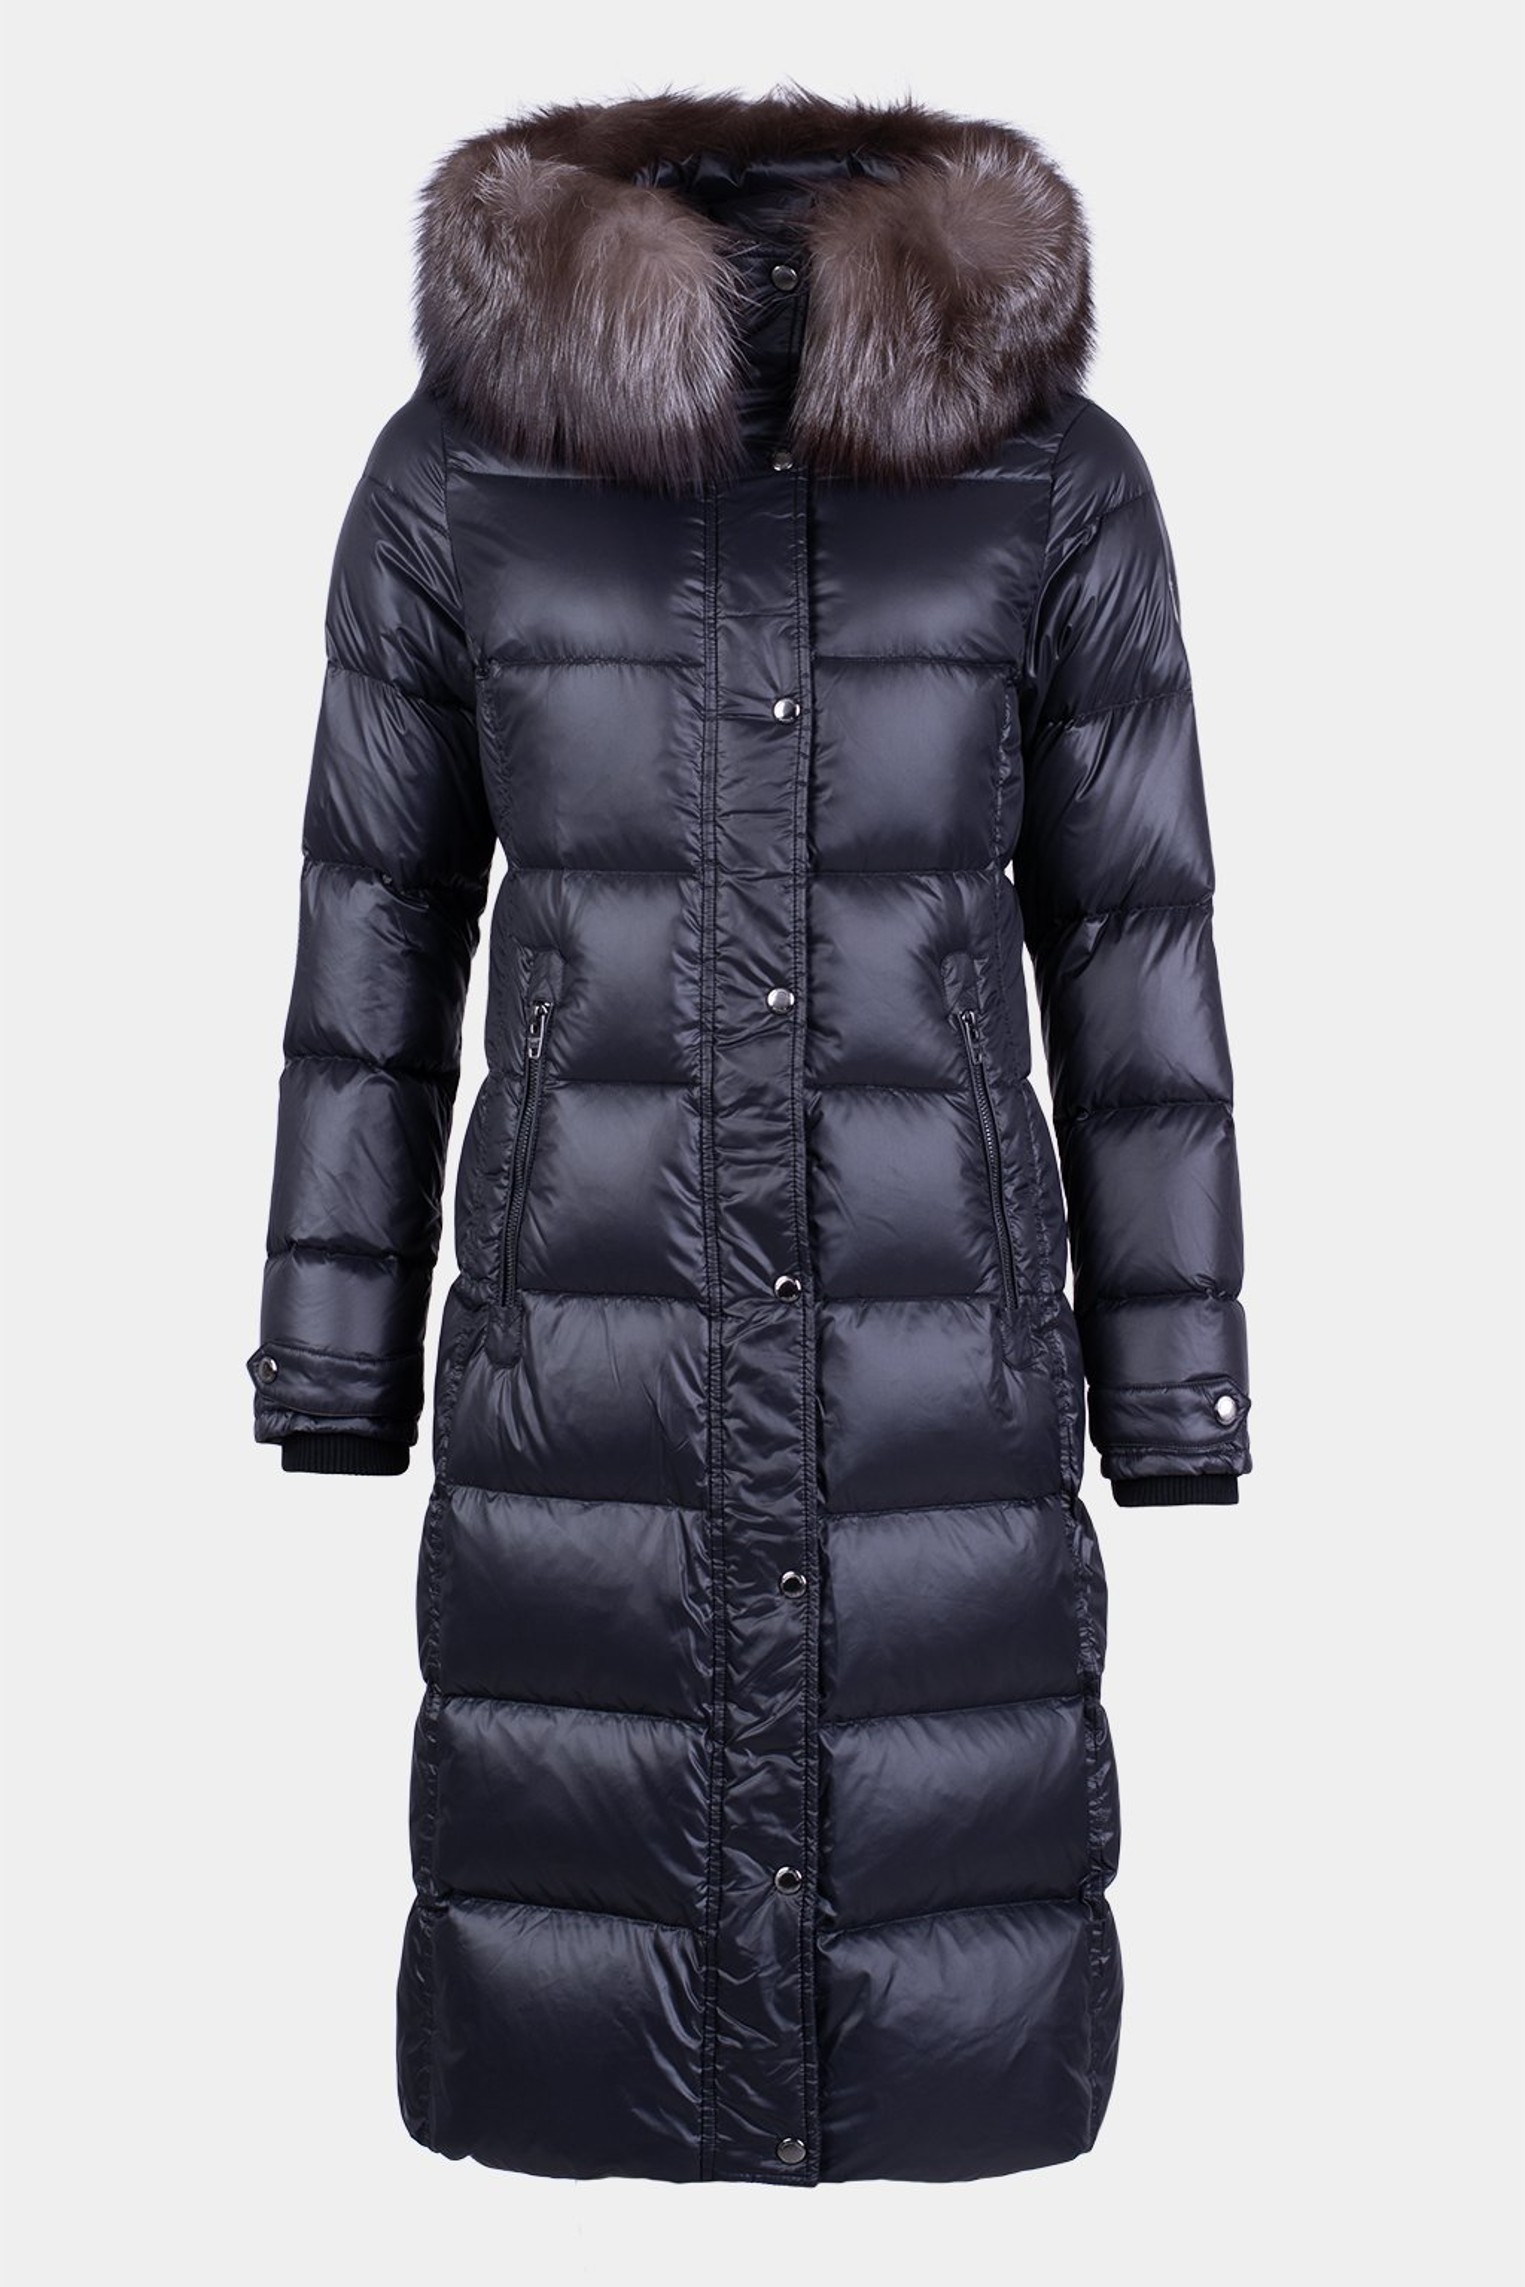 Dámská zimní péřová bunda/kabát/kabát  s kožešinou mývalovce černá